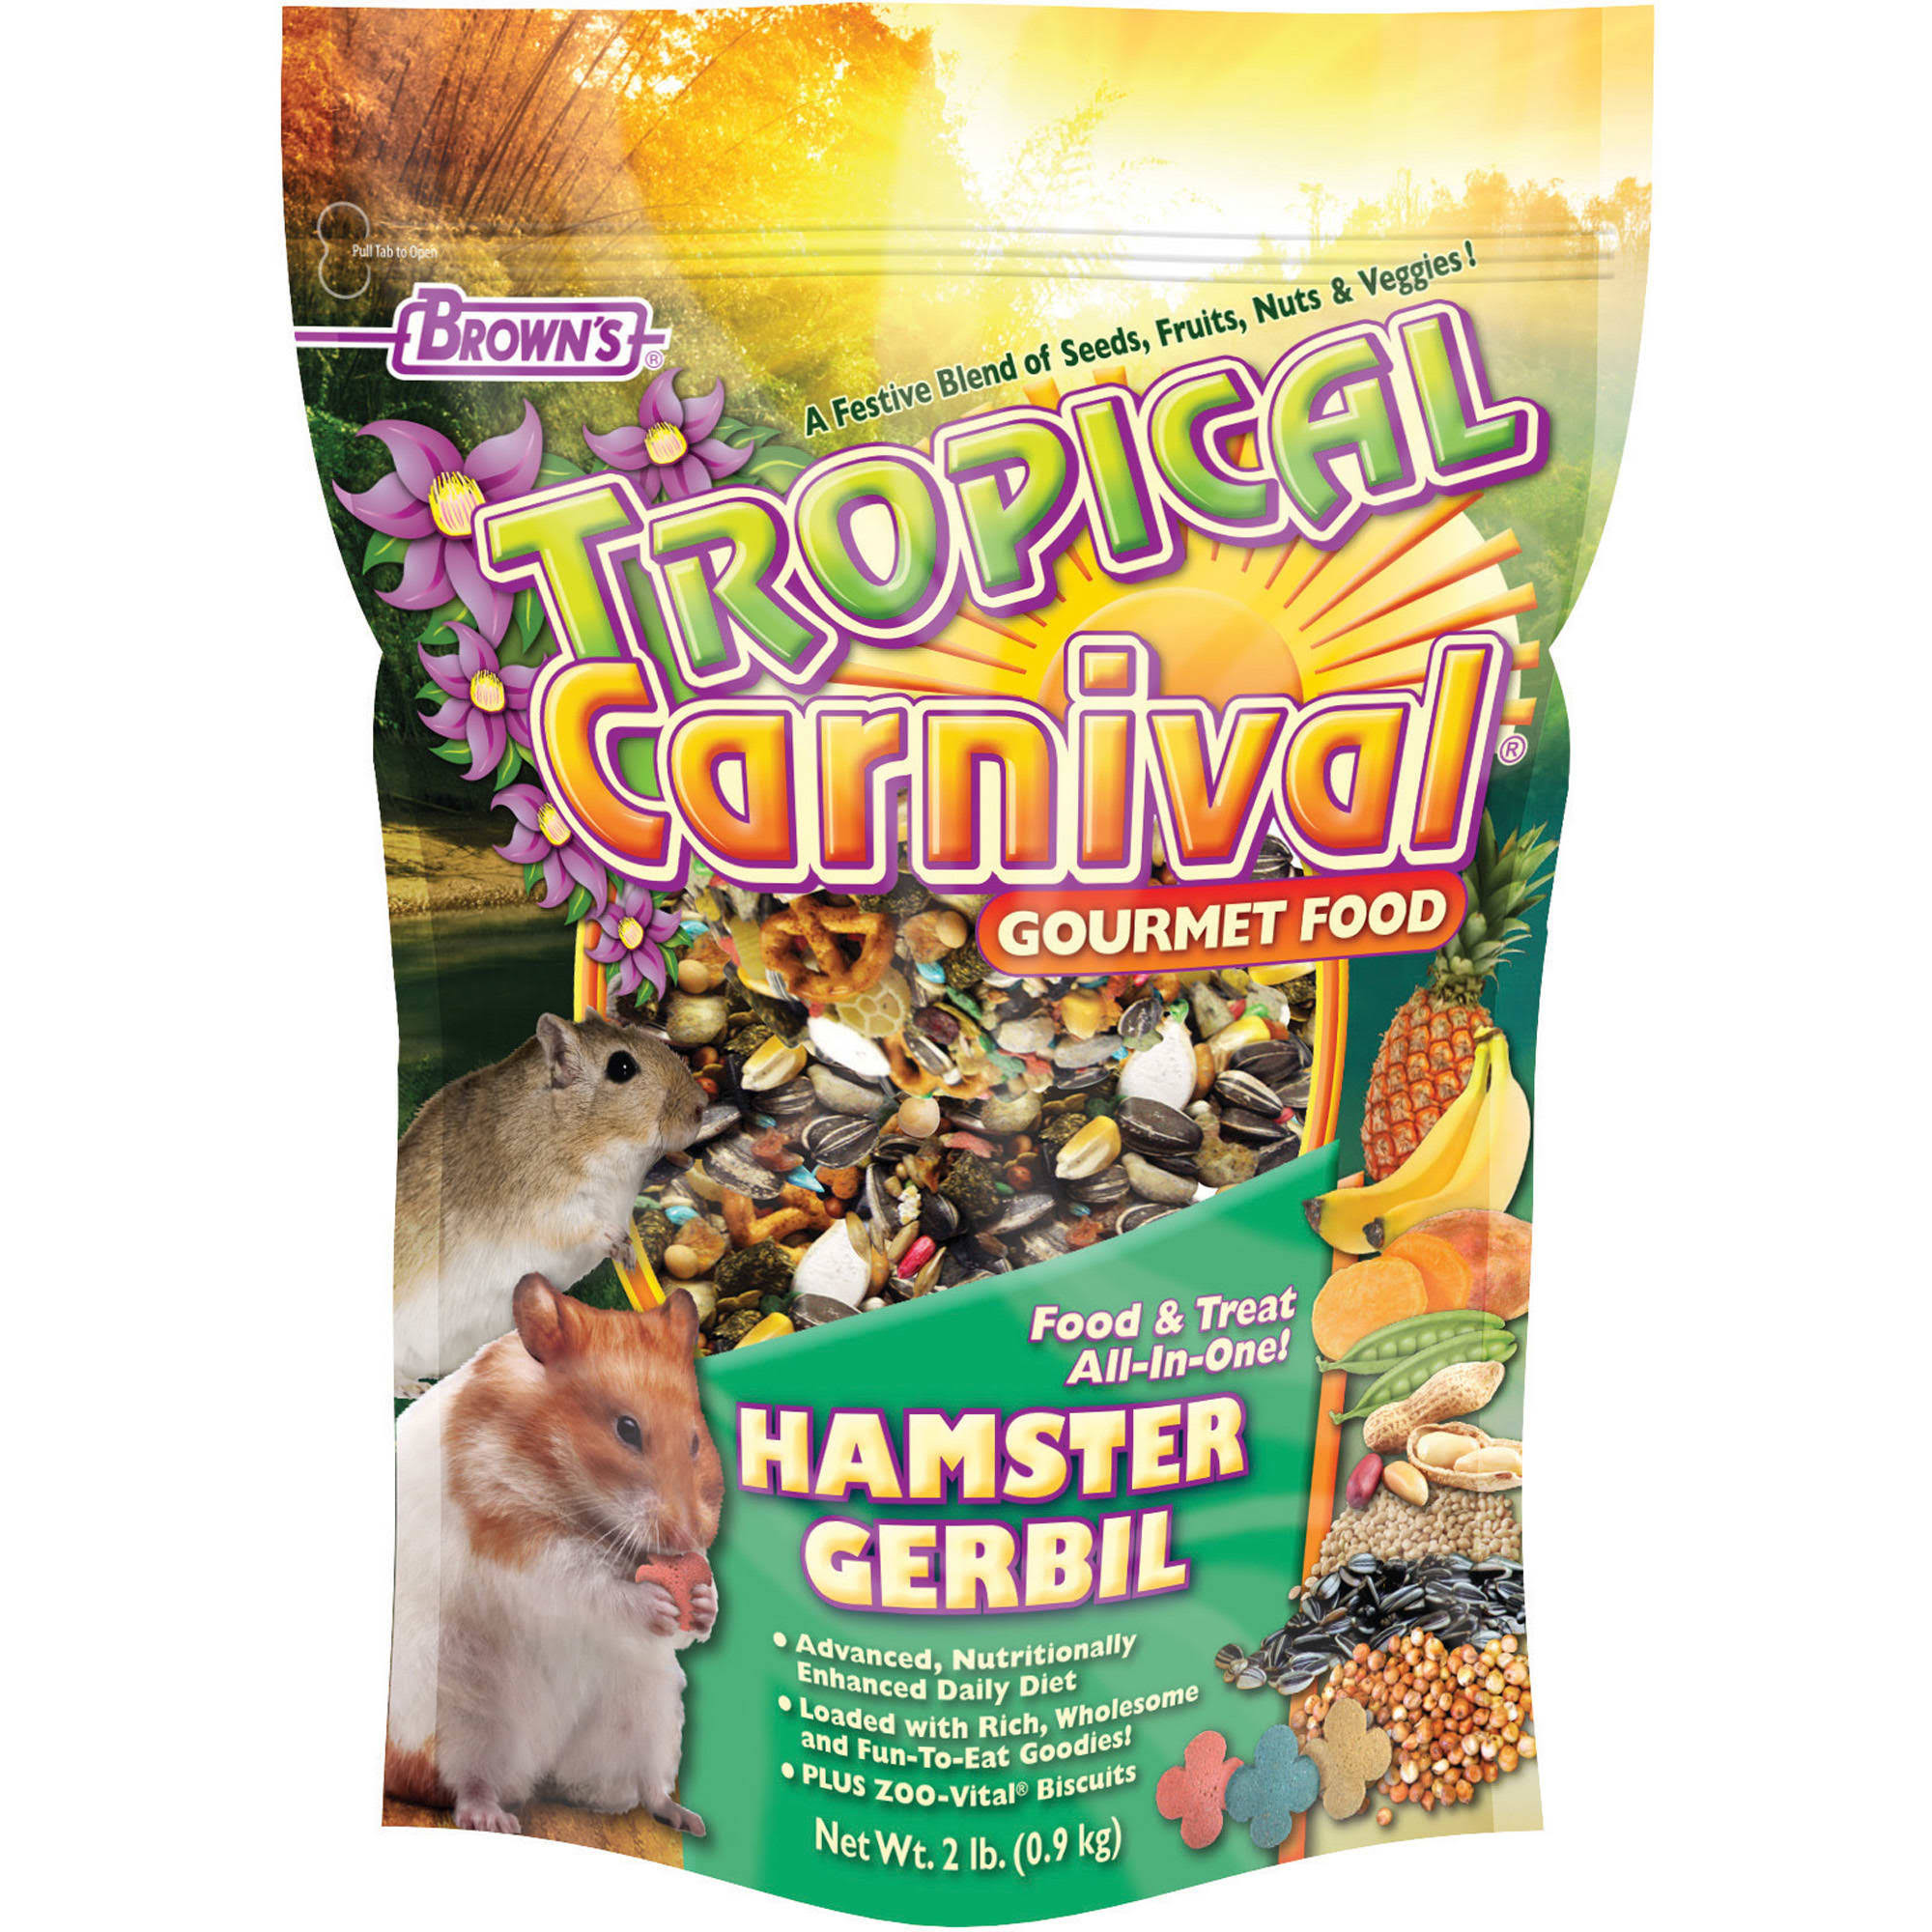 F.M. Brown's Tropical Carnival Hamster Gerbil - 2lbs